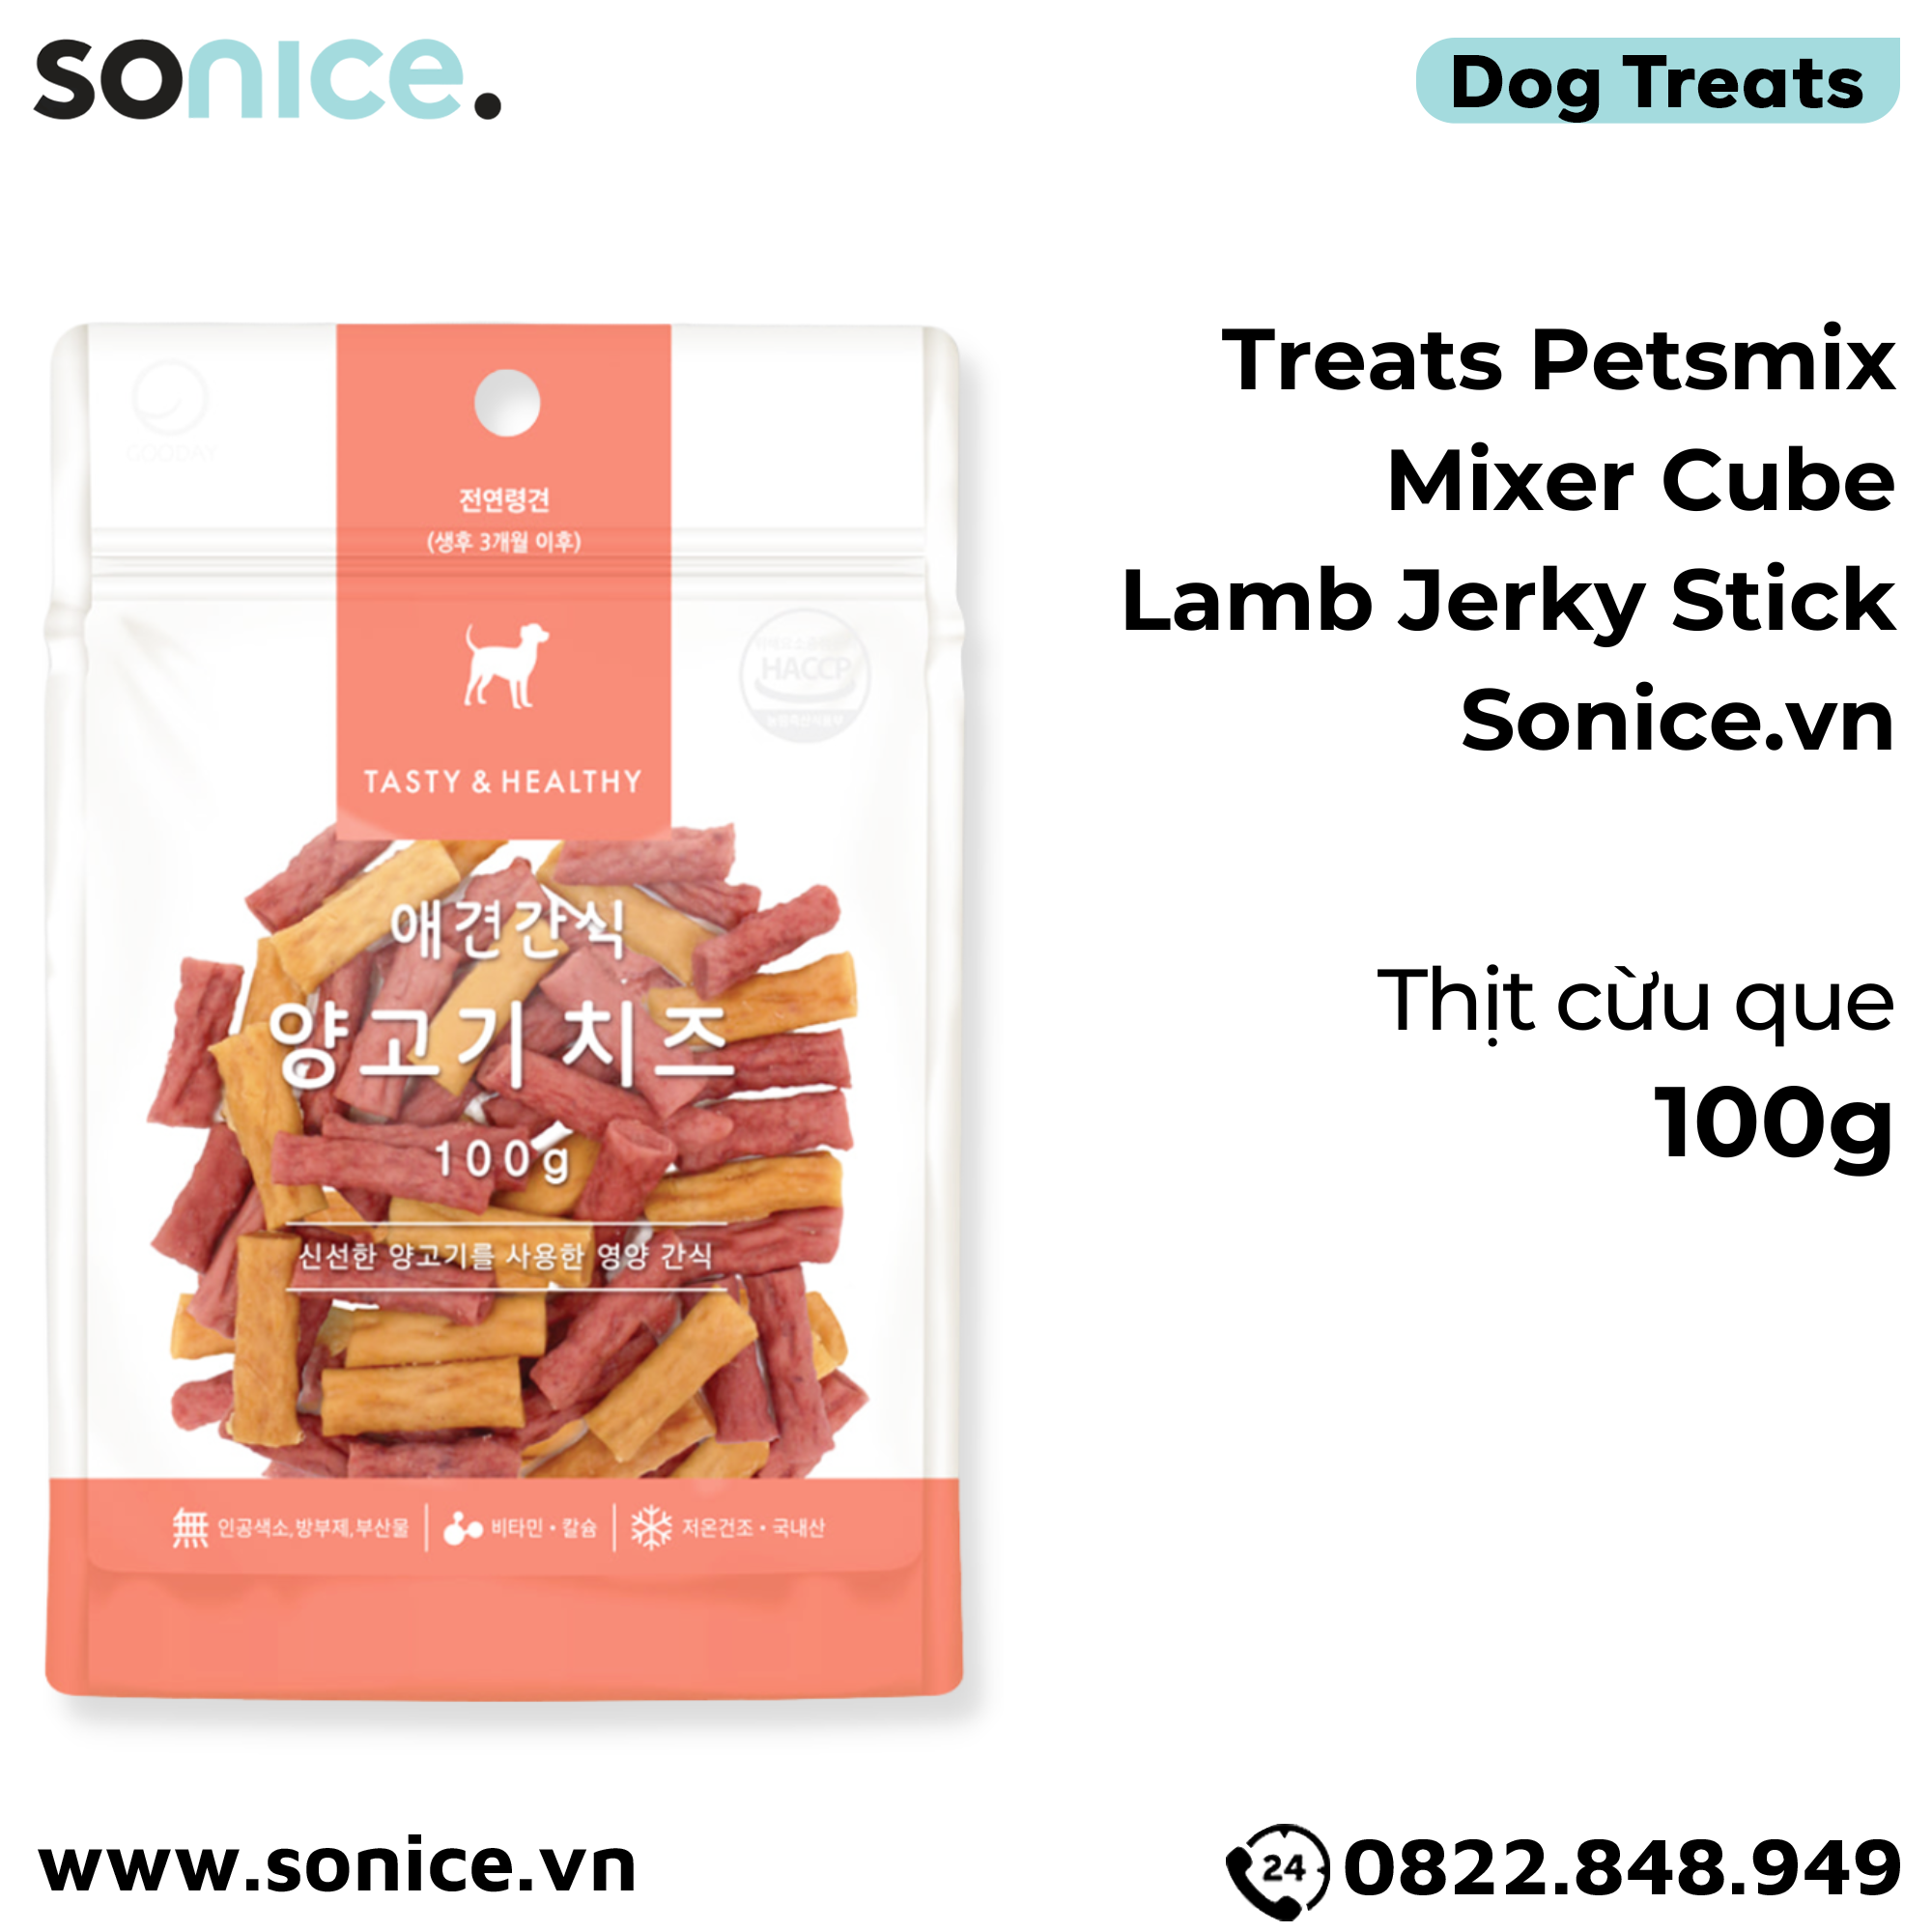  Treats Petsmix Mixer Cube Lamb Jerky Stick 100g - Thịt cừu que SONICE. 